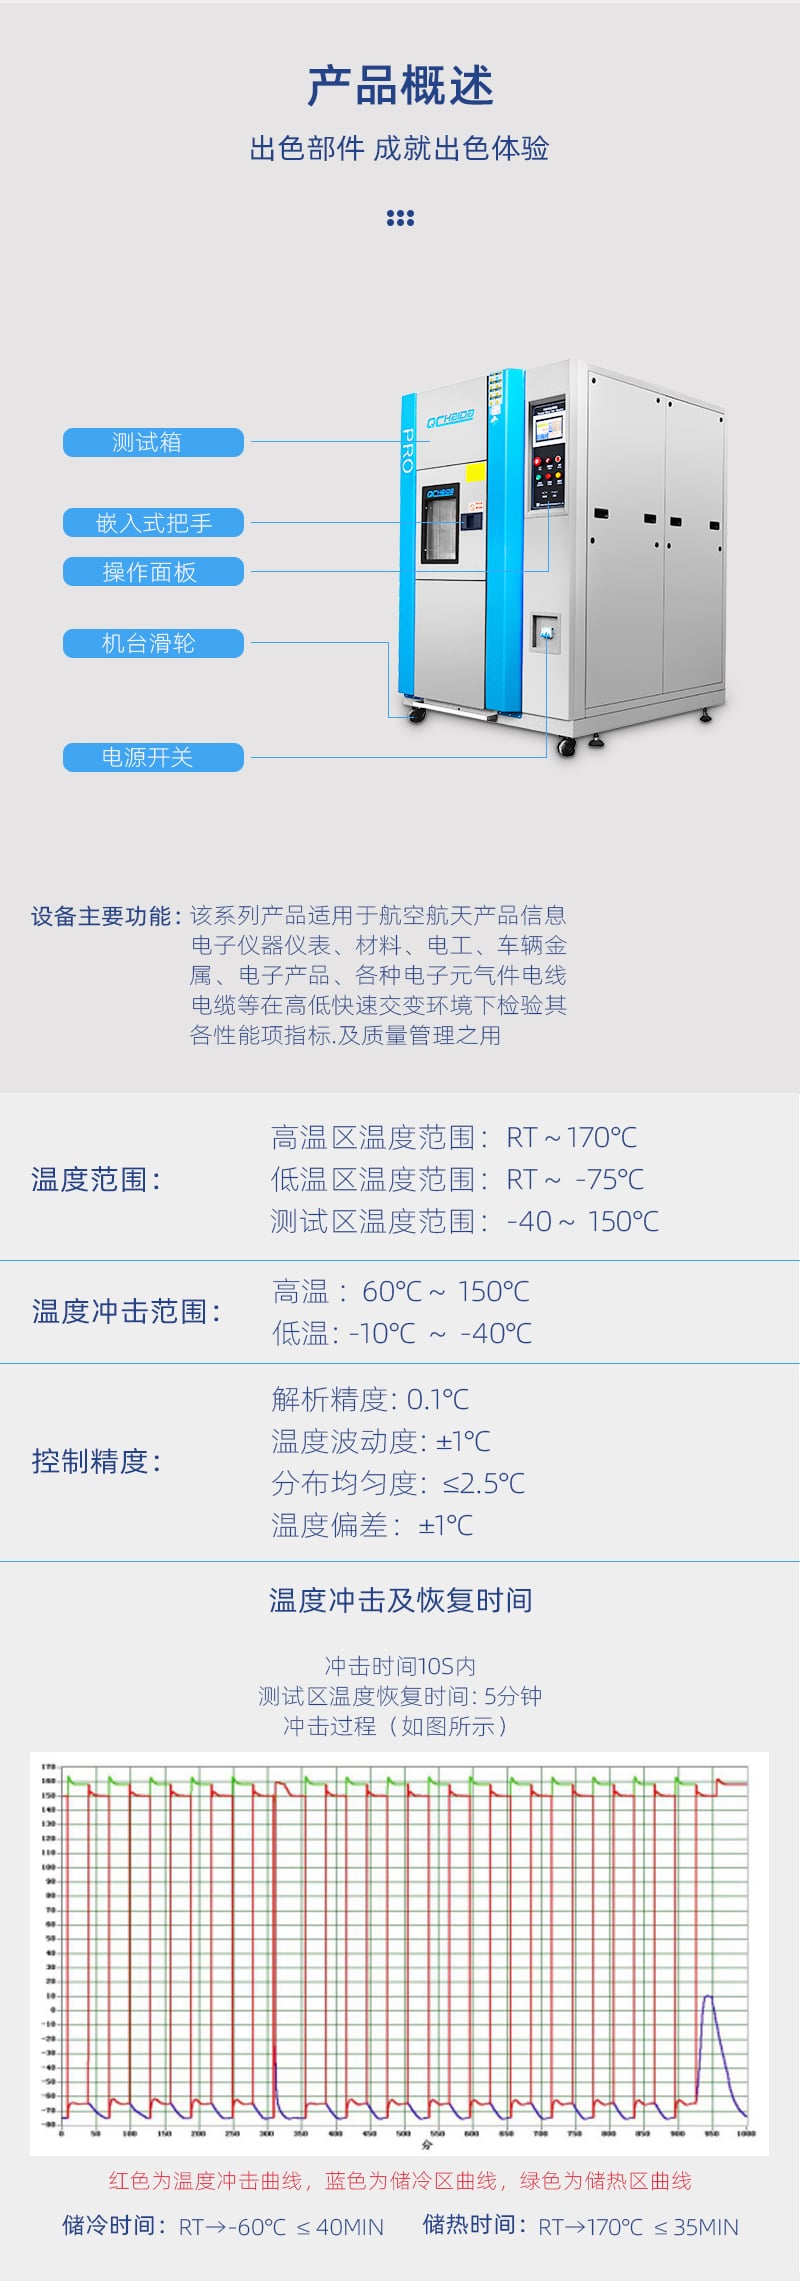 HD-E703冷热冲击试验机侧面-详情页_05